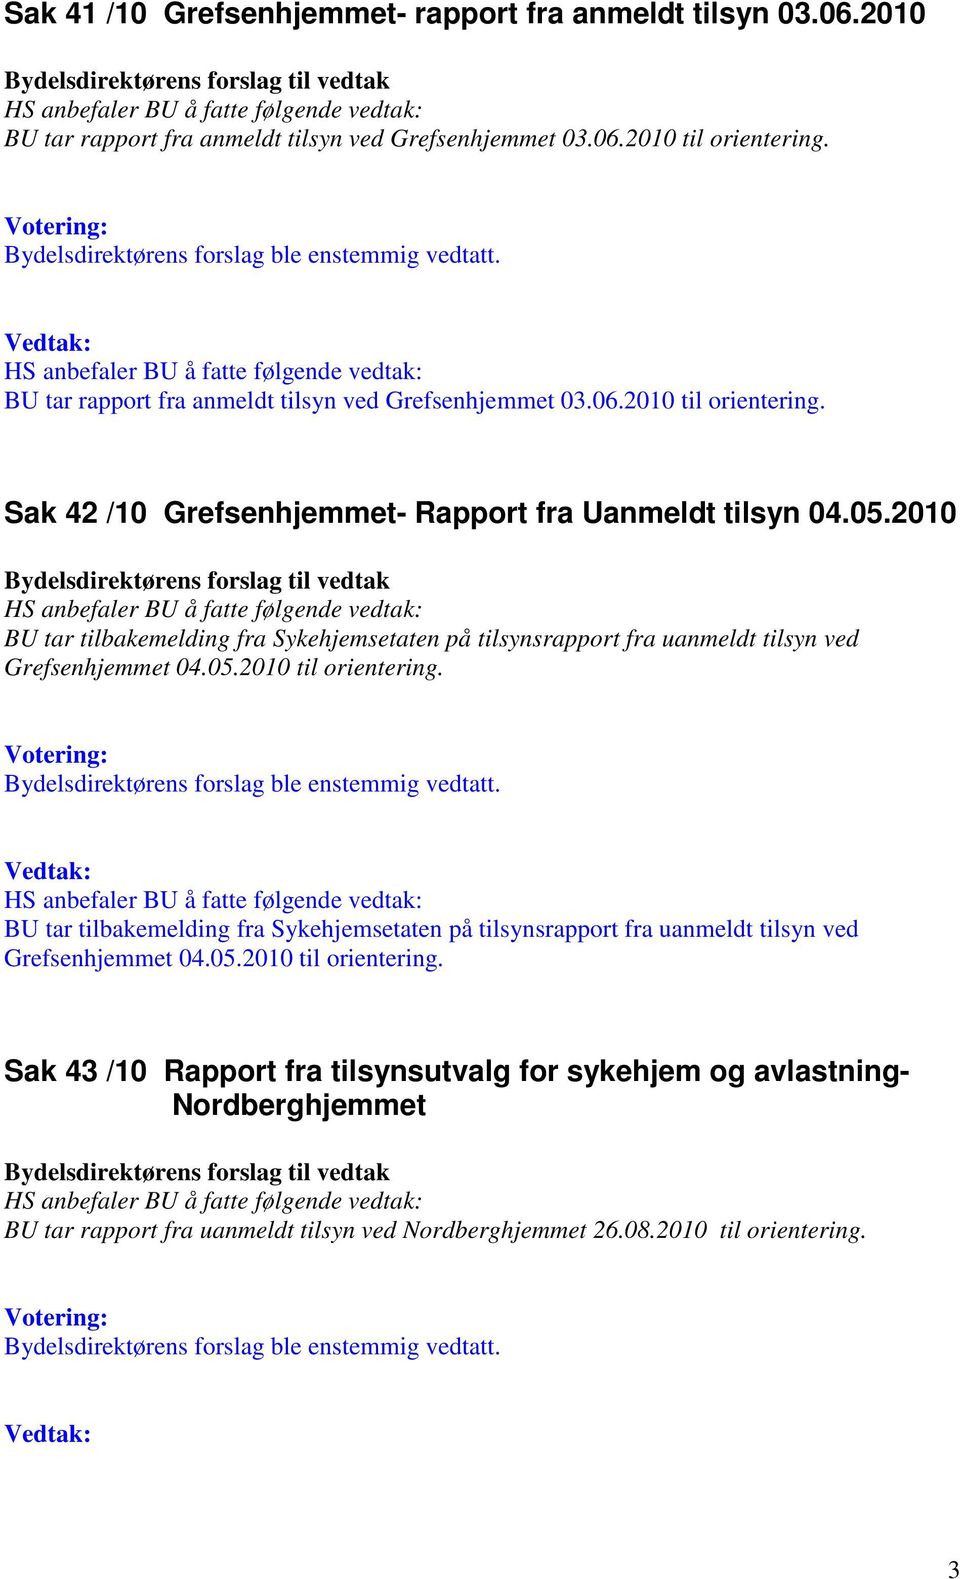 2010 BU tar tilbakemelding fra Sykehjemsetaten på tilsynsrapport fra uanmeldt tilsyn ved Grefsenhjemmet 04.05.2010 til orientering.